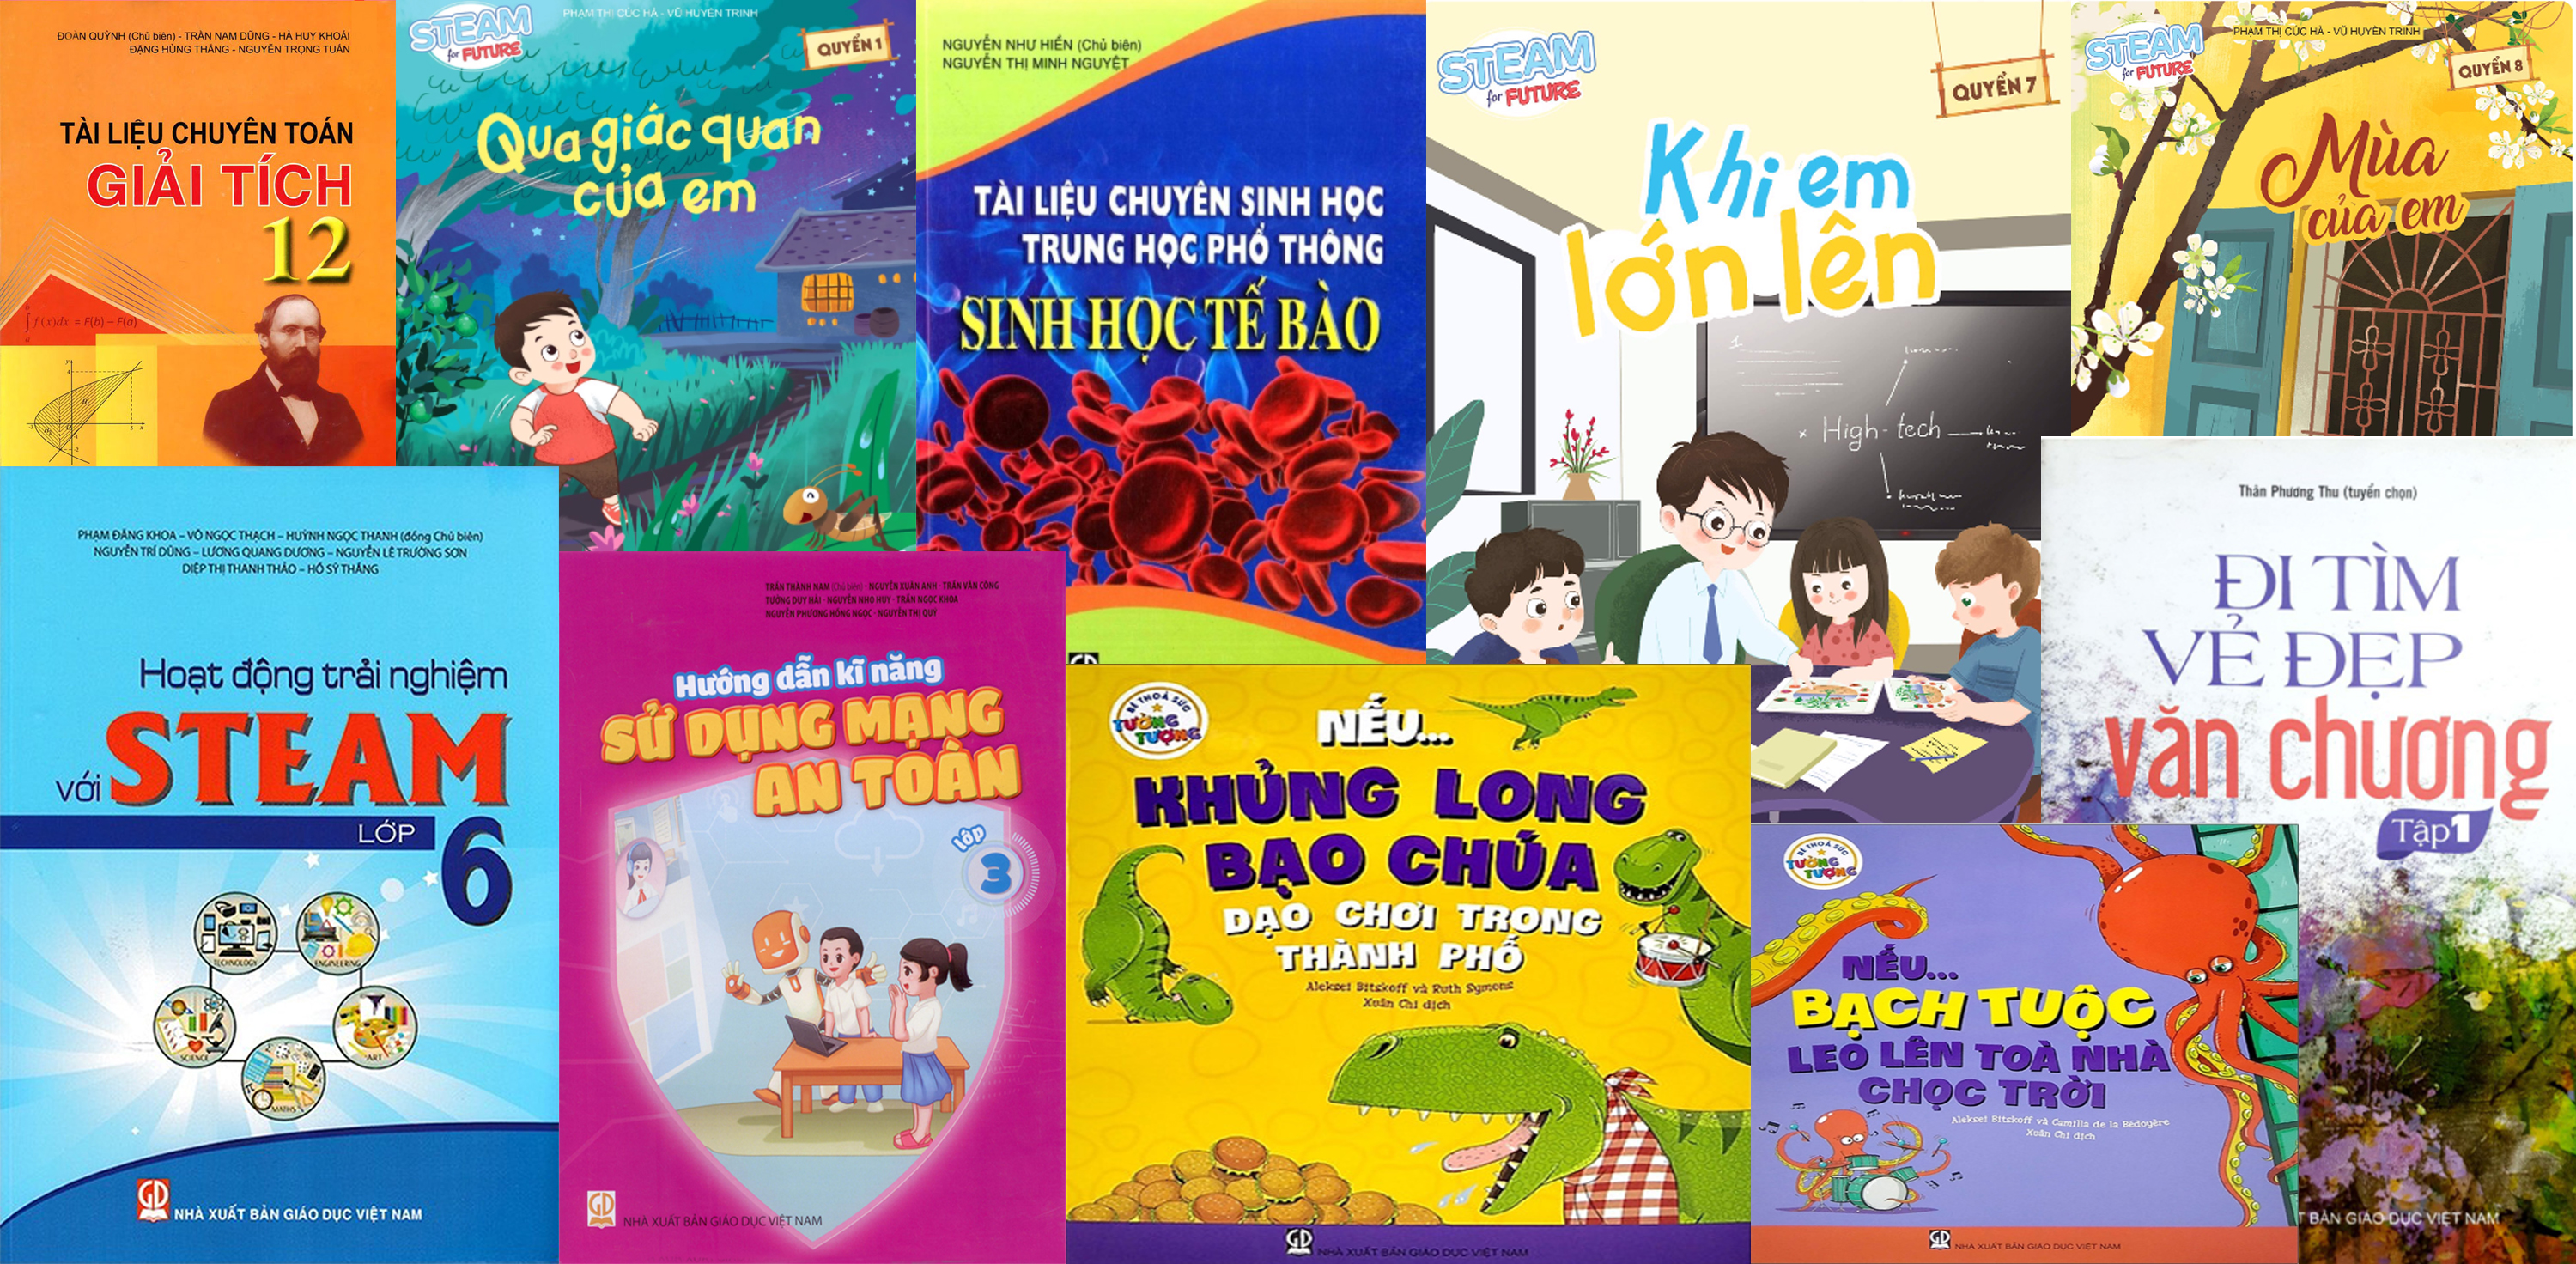 Danh mục sách tham khảo tháng 11 do NXB Giáo dục Việt Nam phát hành